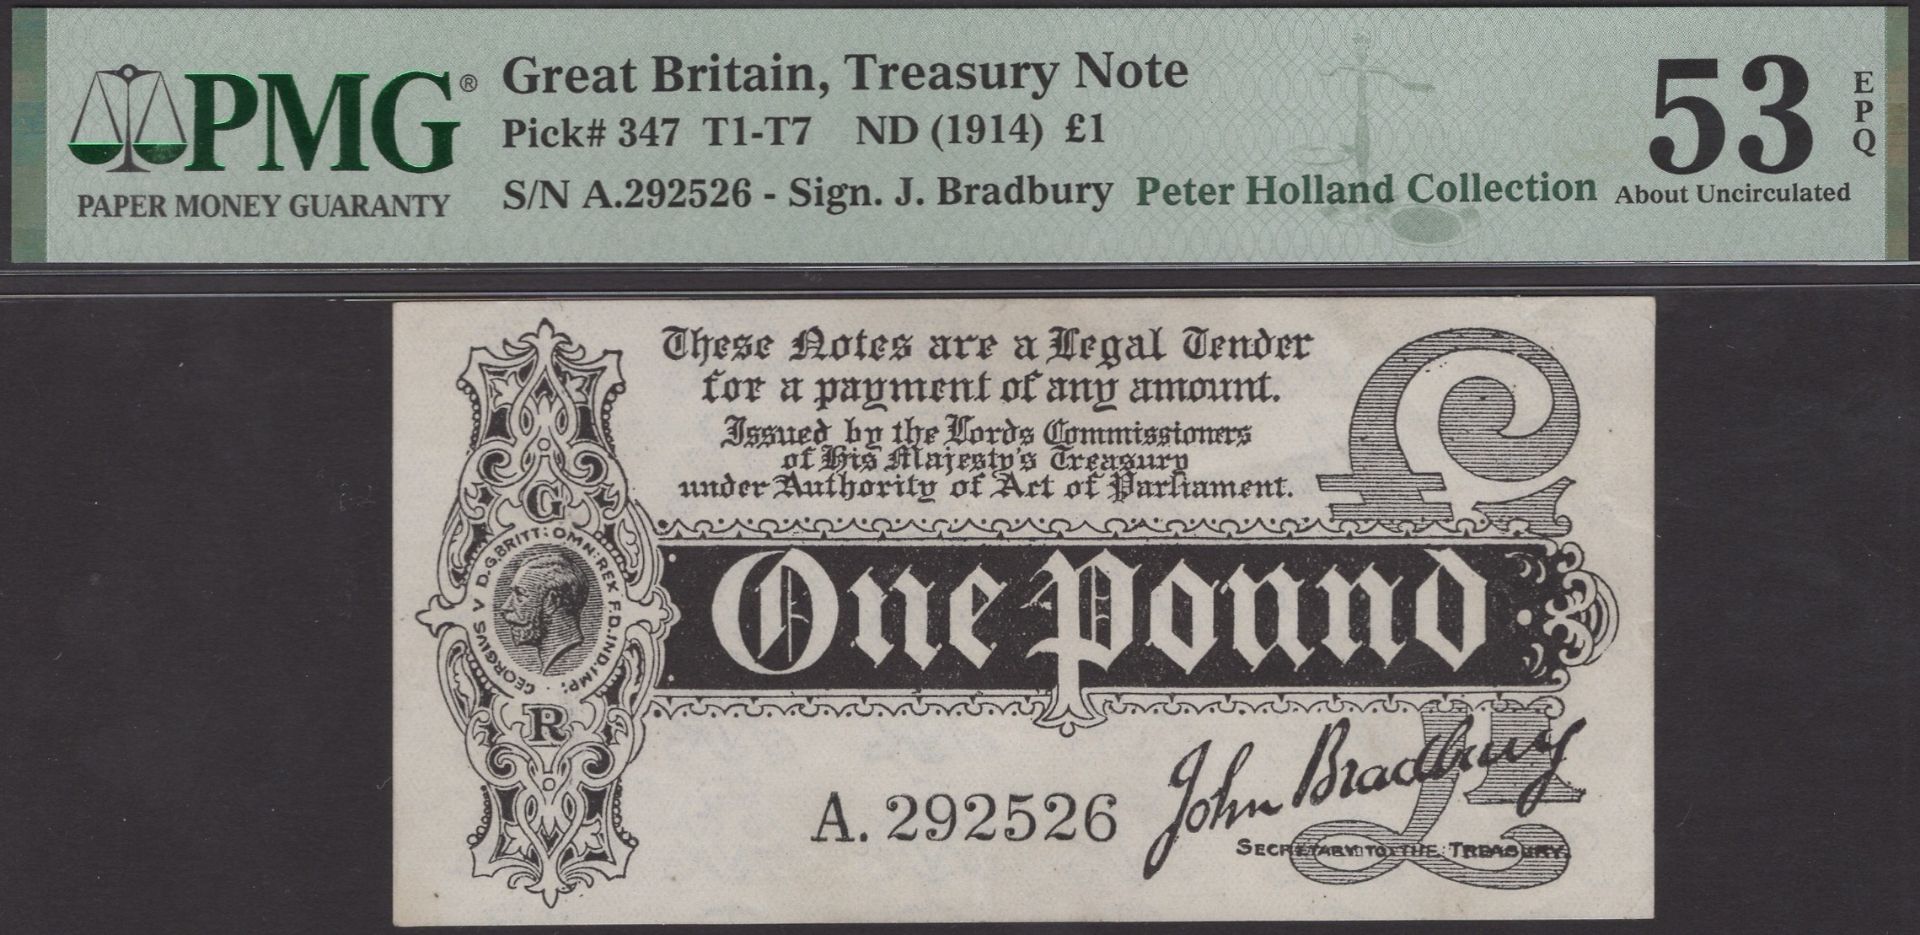 Treasury Series, John Bradbury, Â£1, 7 August 1914, serial number A.292526, in PMG holder 53...